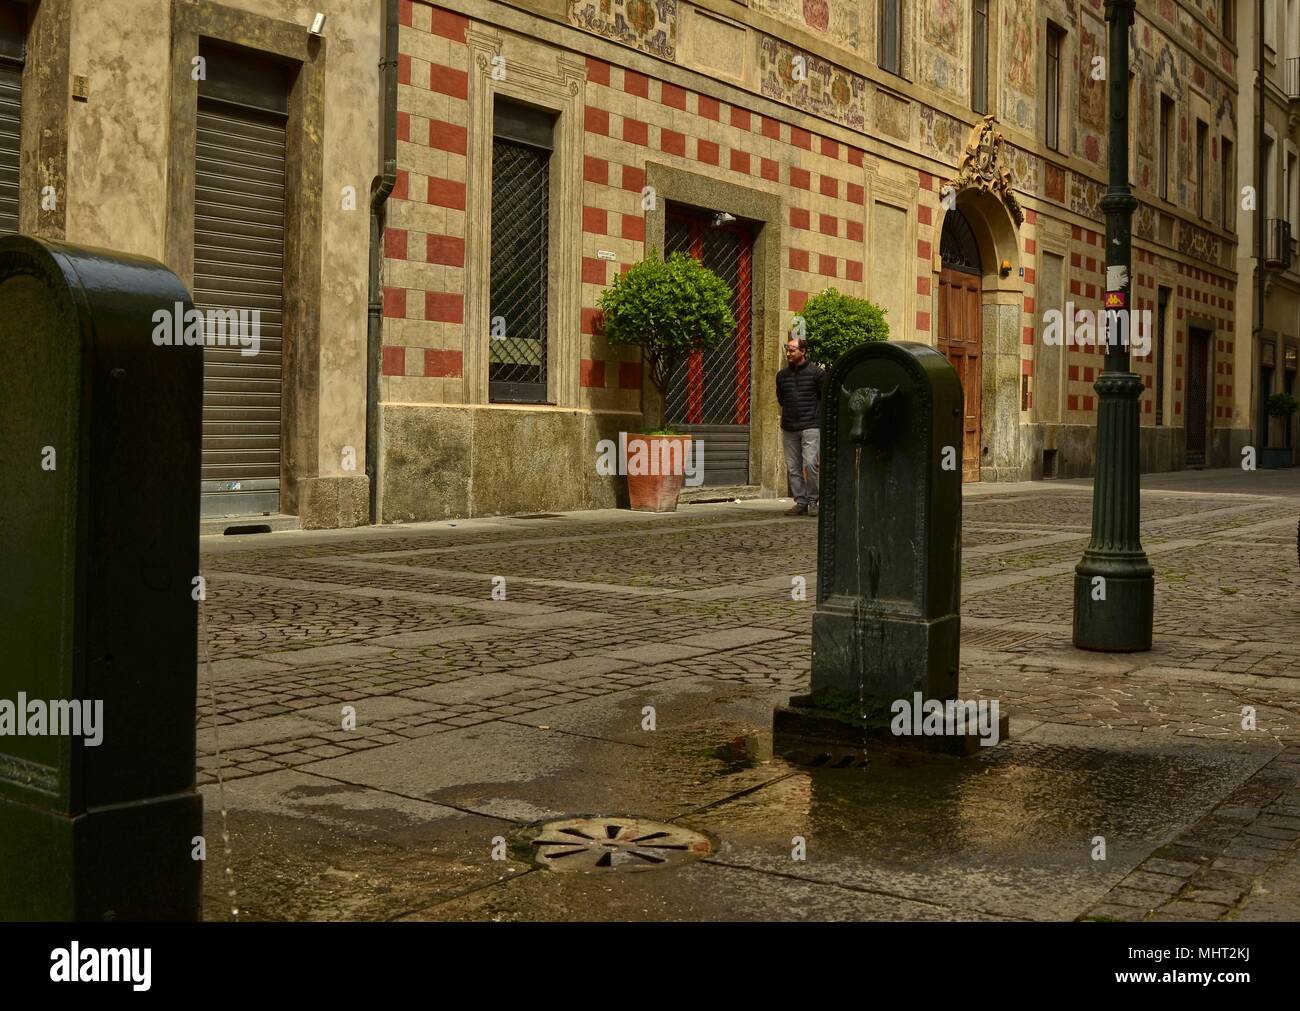 Torino, la Regione Piemonte, Italia. Maggio 2018. Il simbolico fontana di Torino, il torello o turet in piemontese. Essi si trovano in ogni angolo. Foto Stock